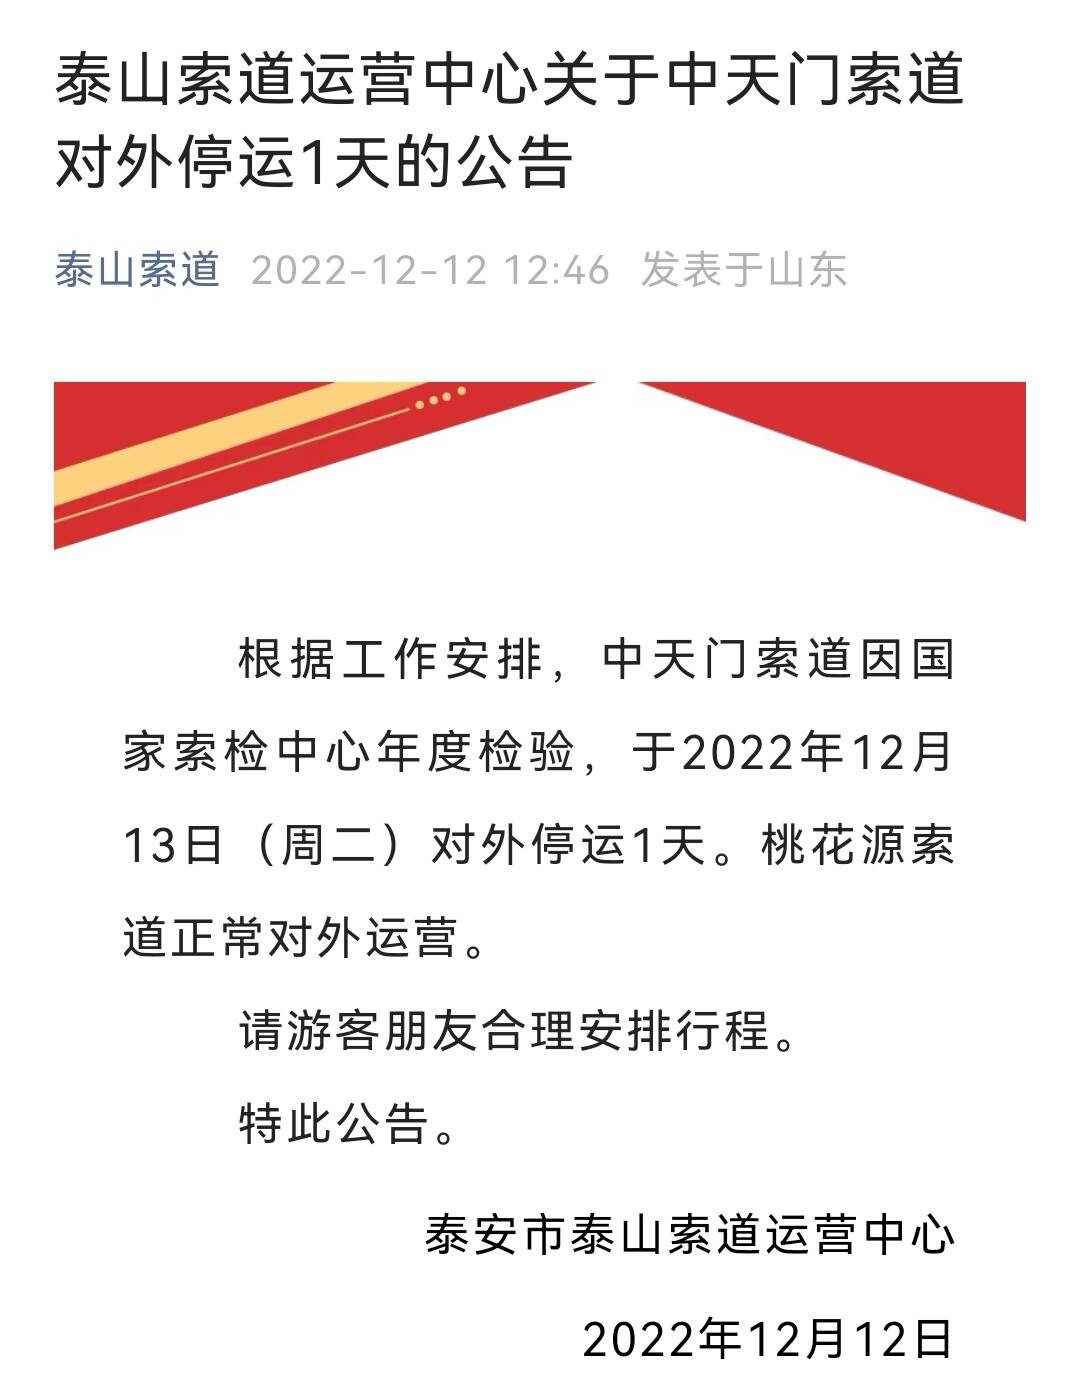 泰山索道运营中心发布公告：中天门索道对外停运1天